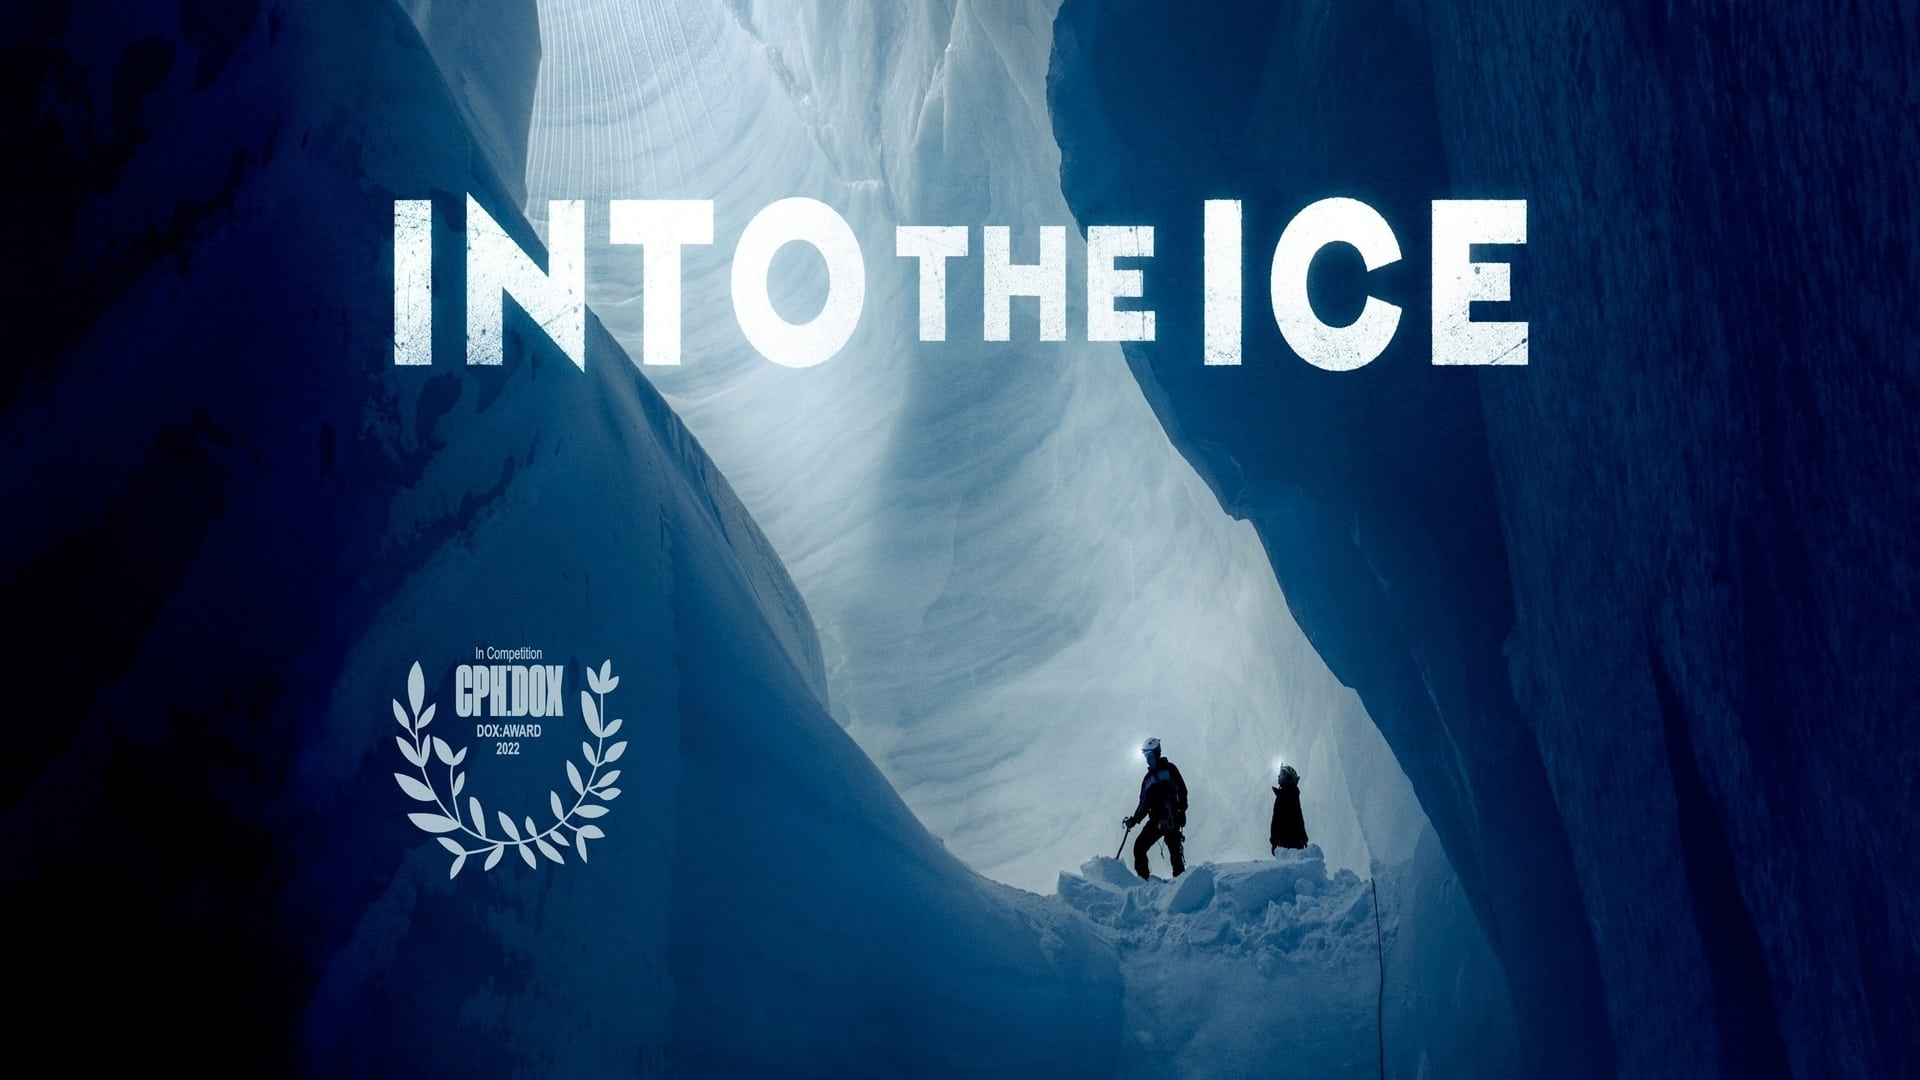 Rejsen til isens indre